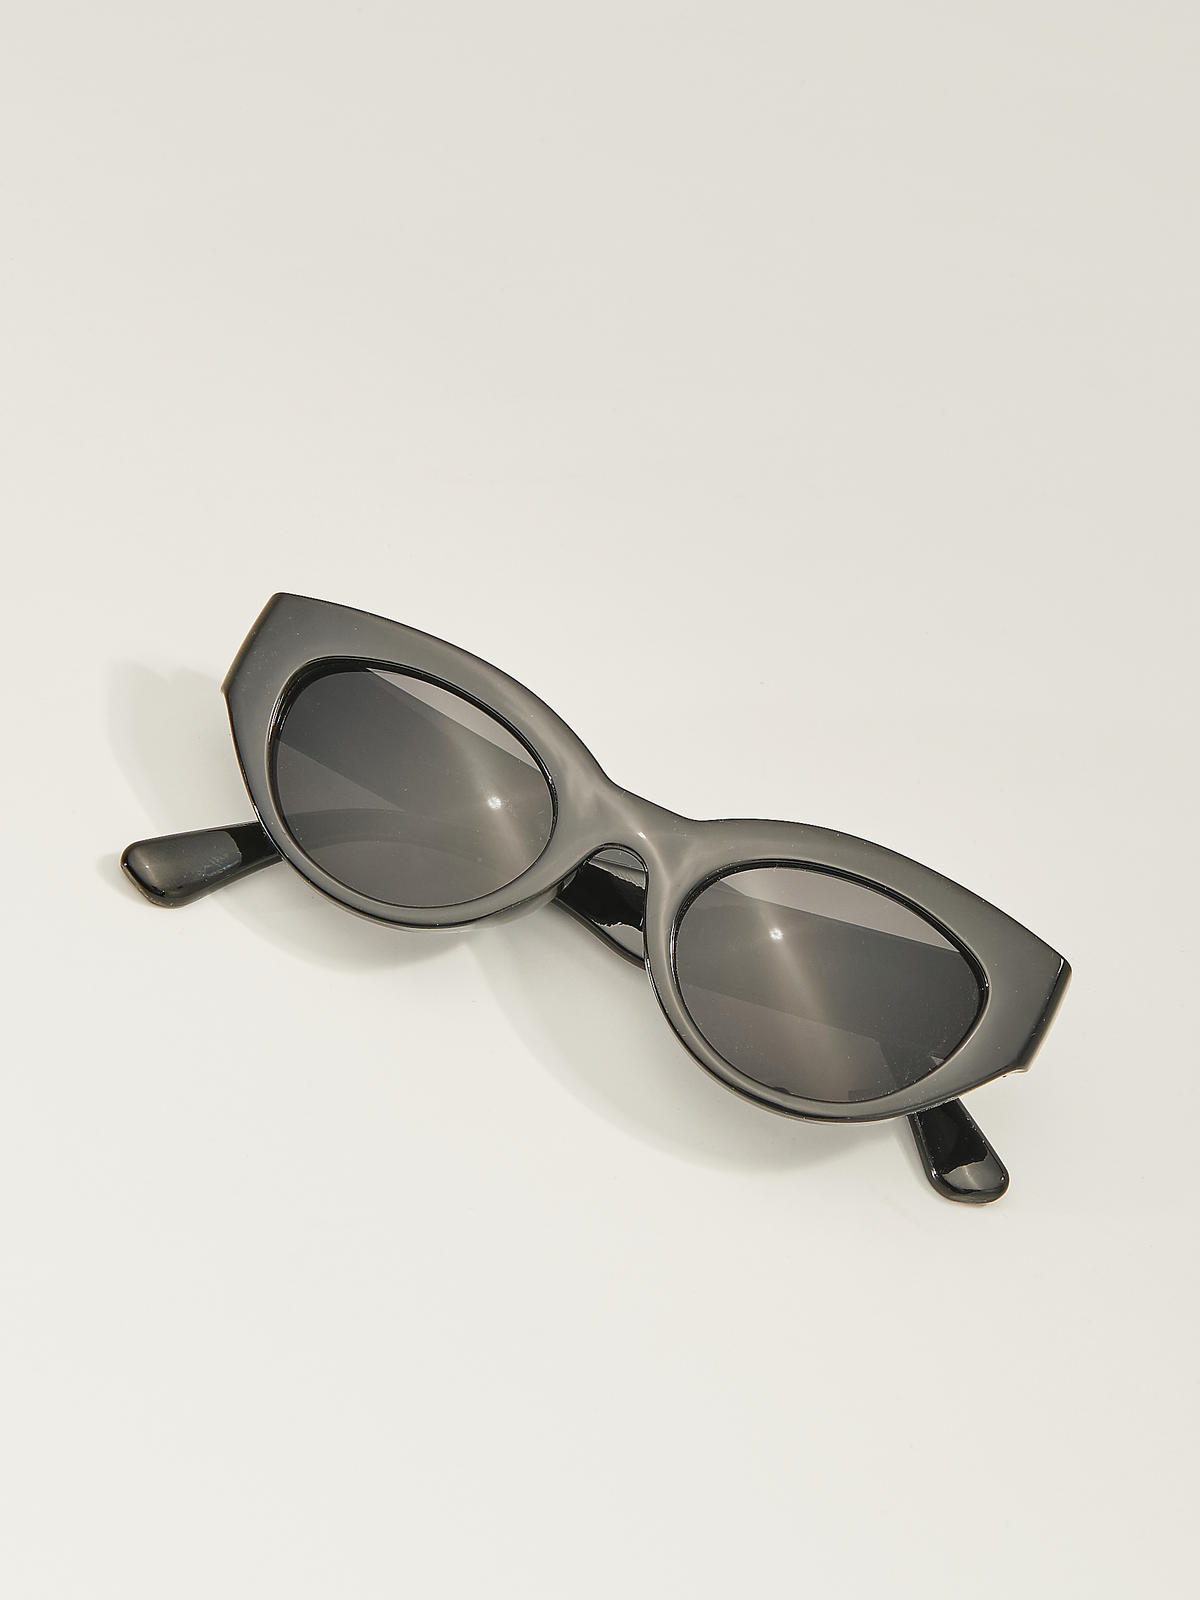 Okulary przeciwsłoneczne - Mohito - 14,99 zł (było 39,99 zł)